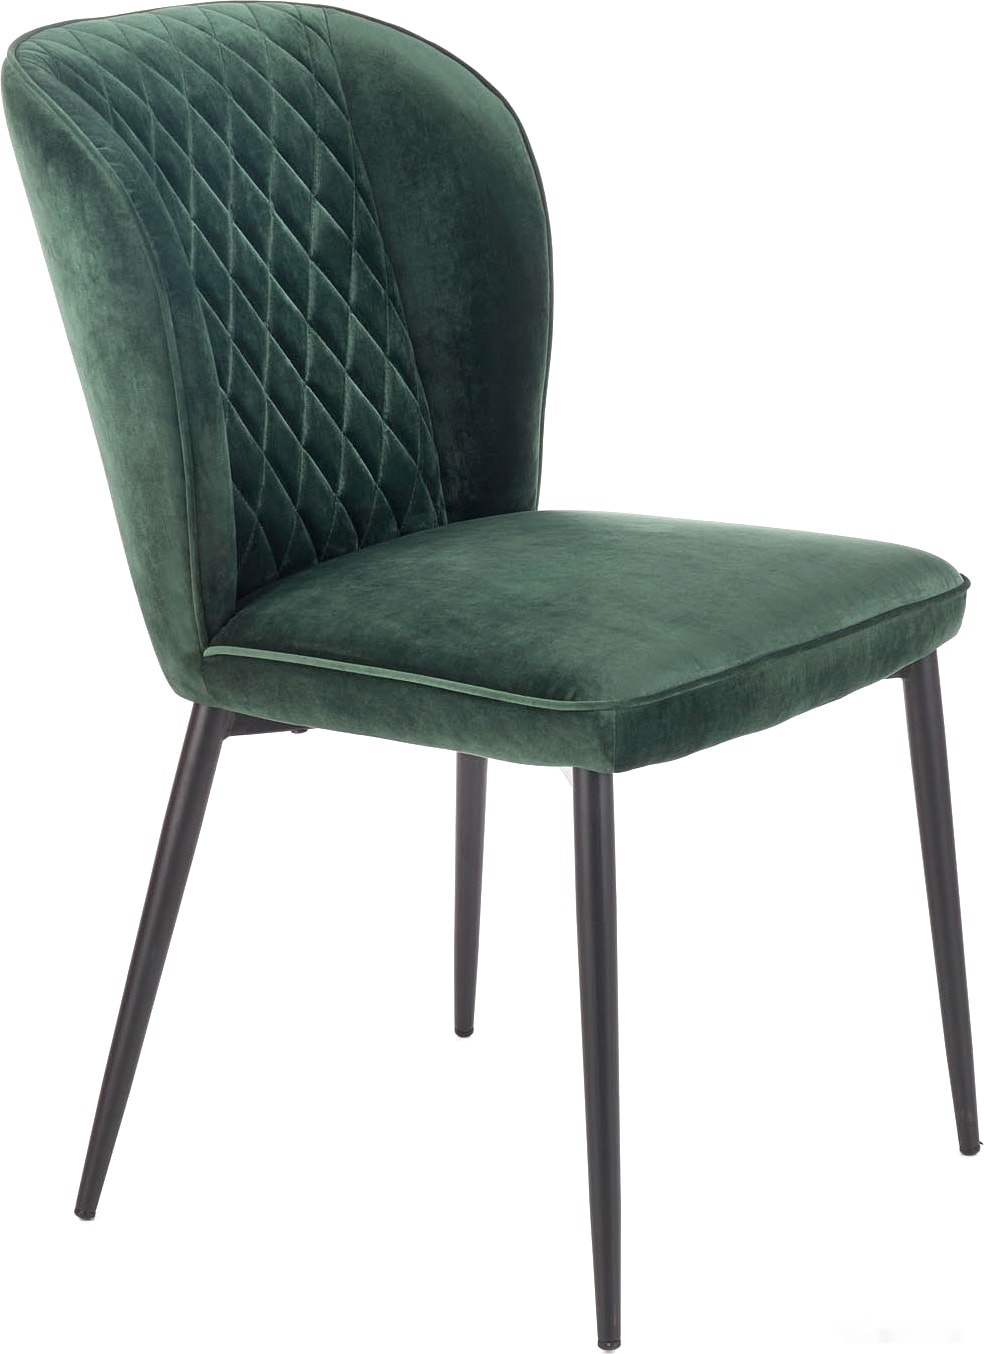 стул halmar k399 (темно-зеленый) (v-ch-k/399-kr-c.zielony)